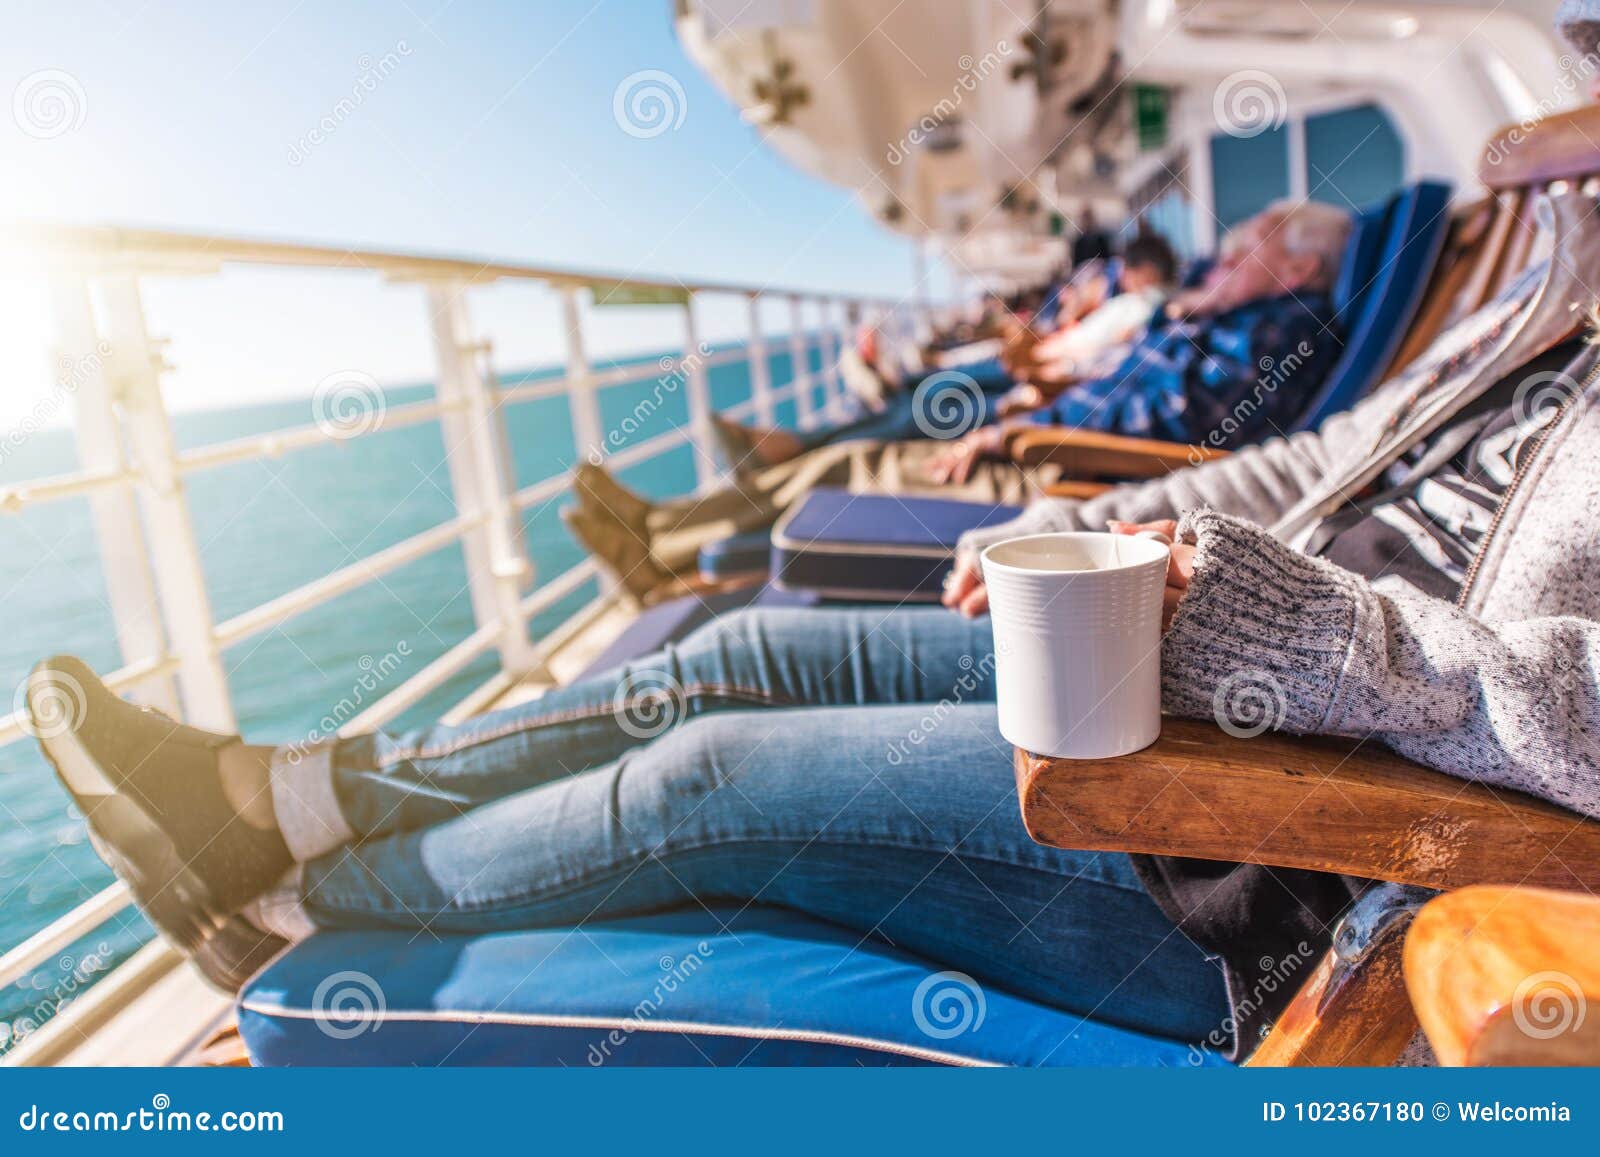 deckchairs cruise ship relax